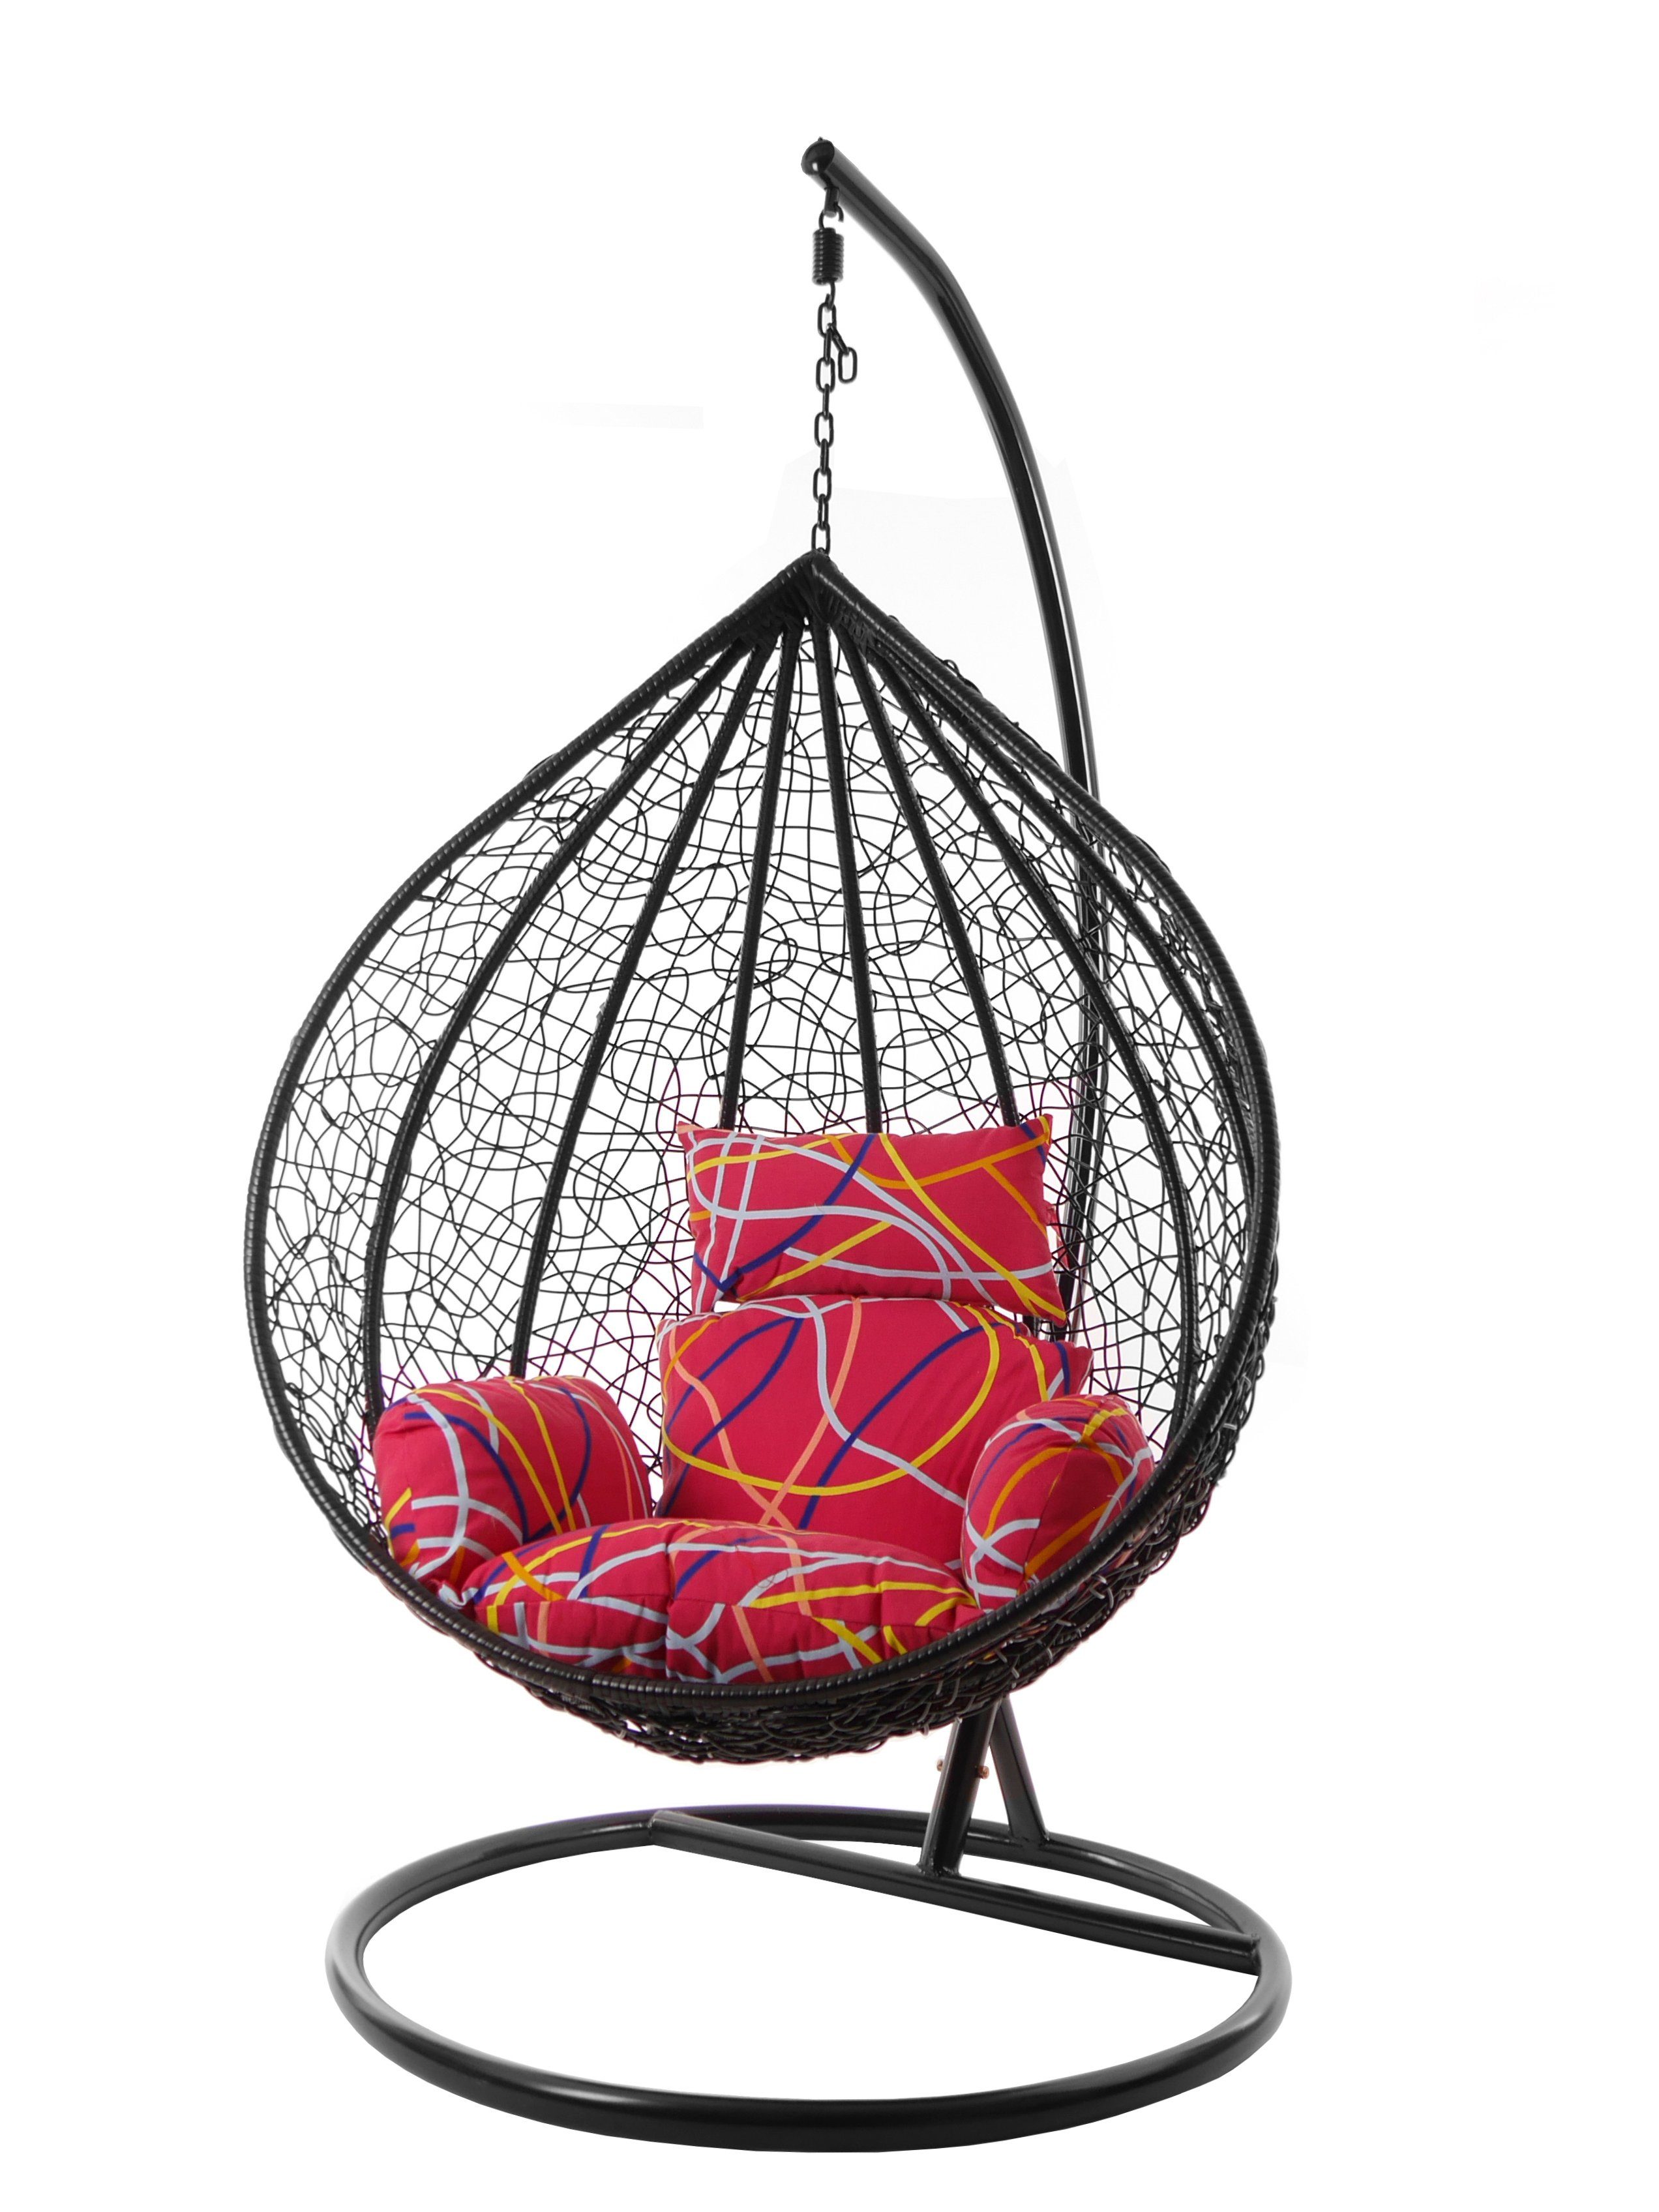 Gestell bunt Nest-Kissen KIDEO Swing Chair, und mit (3021 Hängesessel be gemustert Hängesessel Hängesessel abstract) MANACOR schwarz, Kissen, XXL